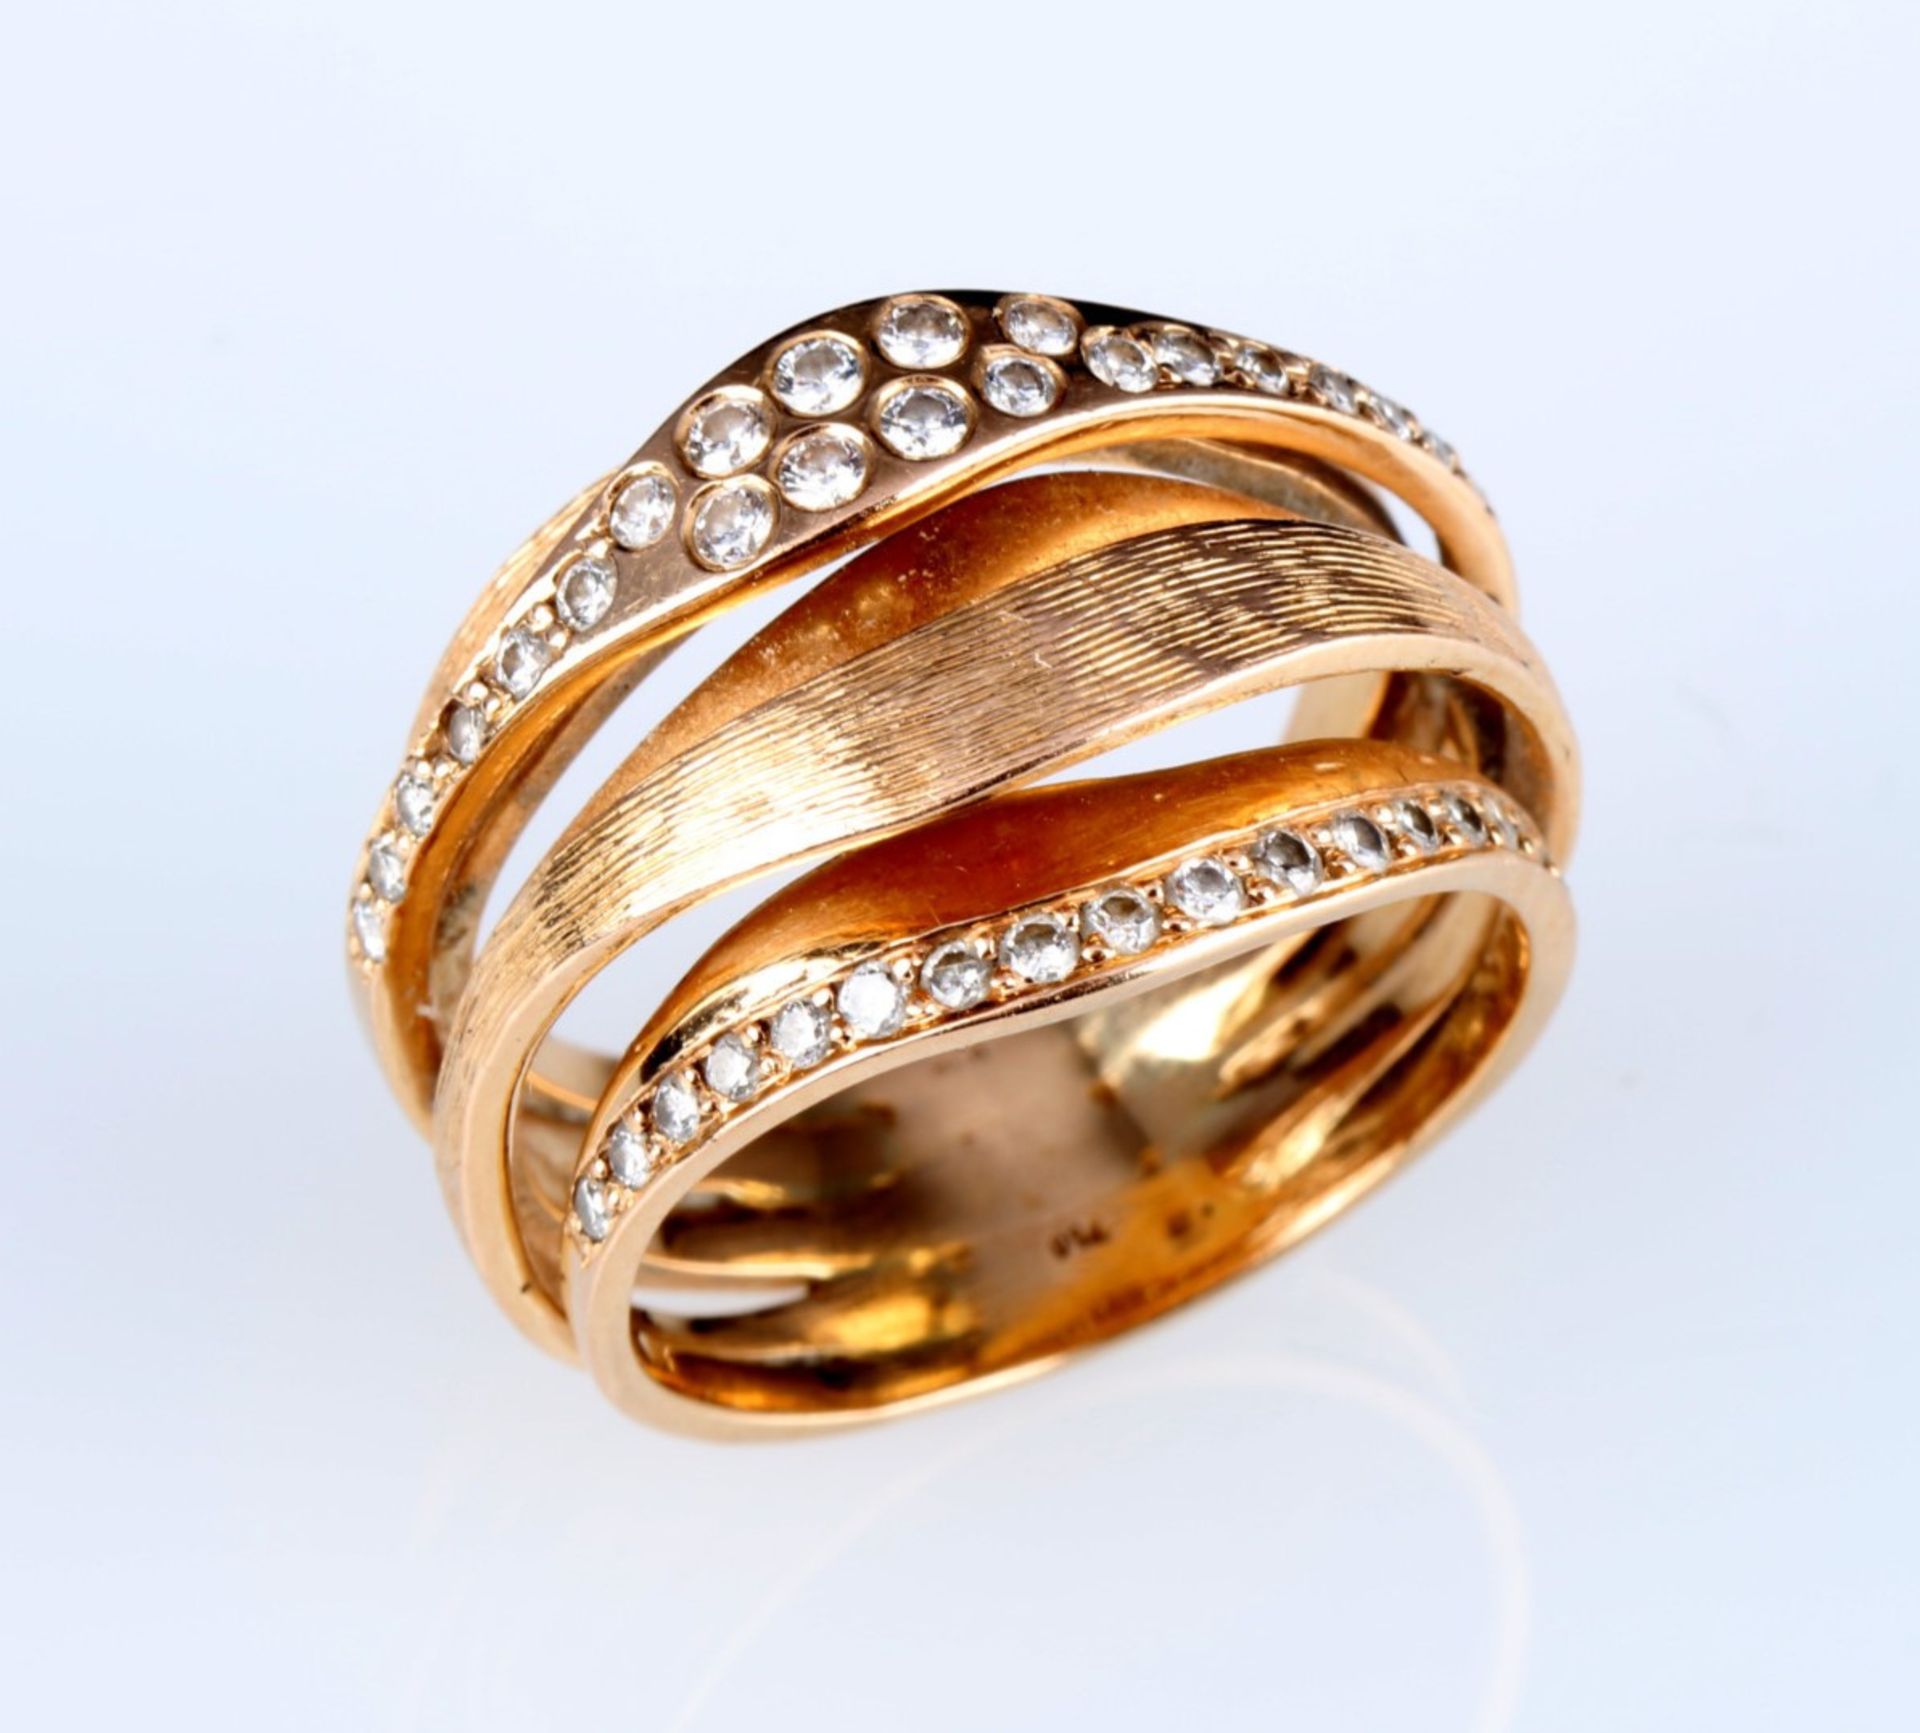 750 Gold Croisé Ring with Brilliant-Cut Diamonds,